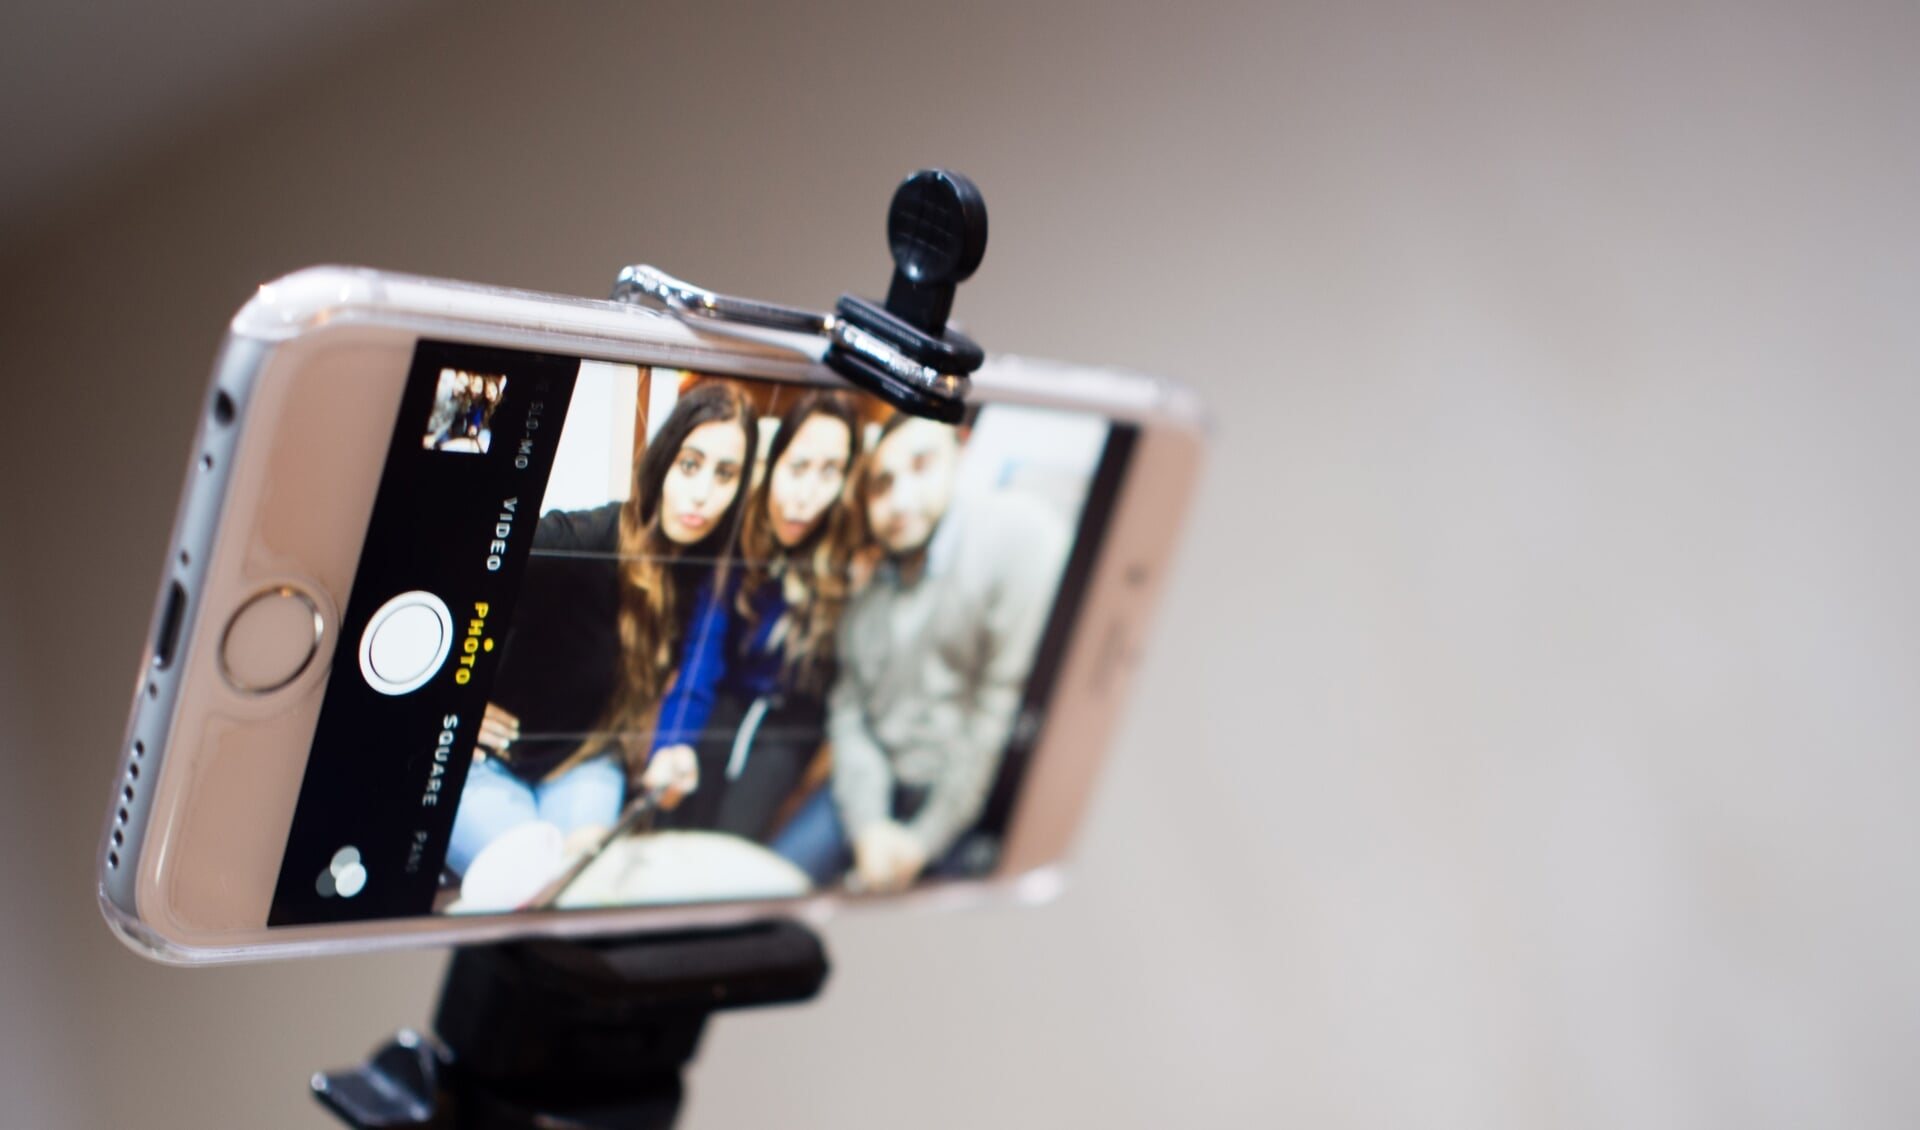 Met de selfiestick kun je zelf een vlog maken. Foto: PR 